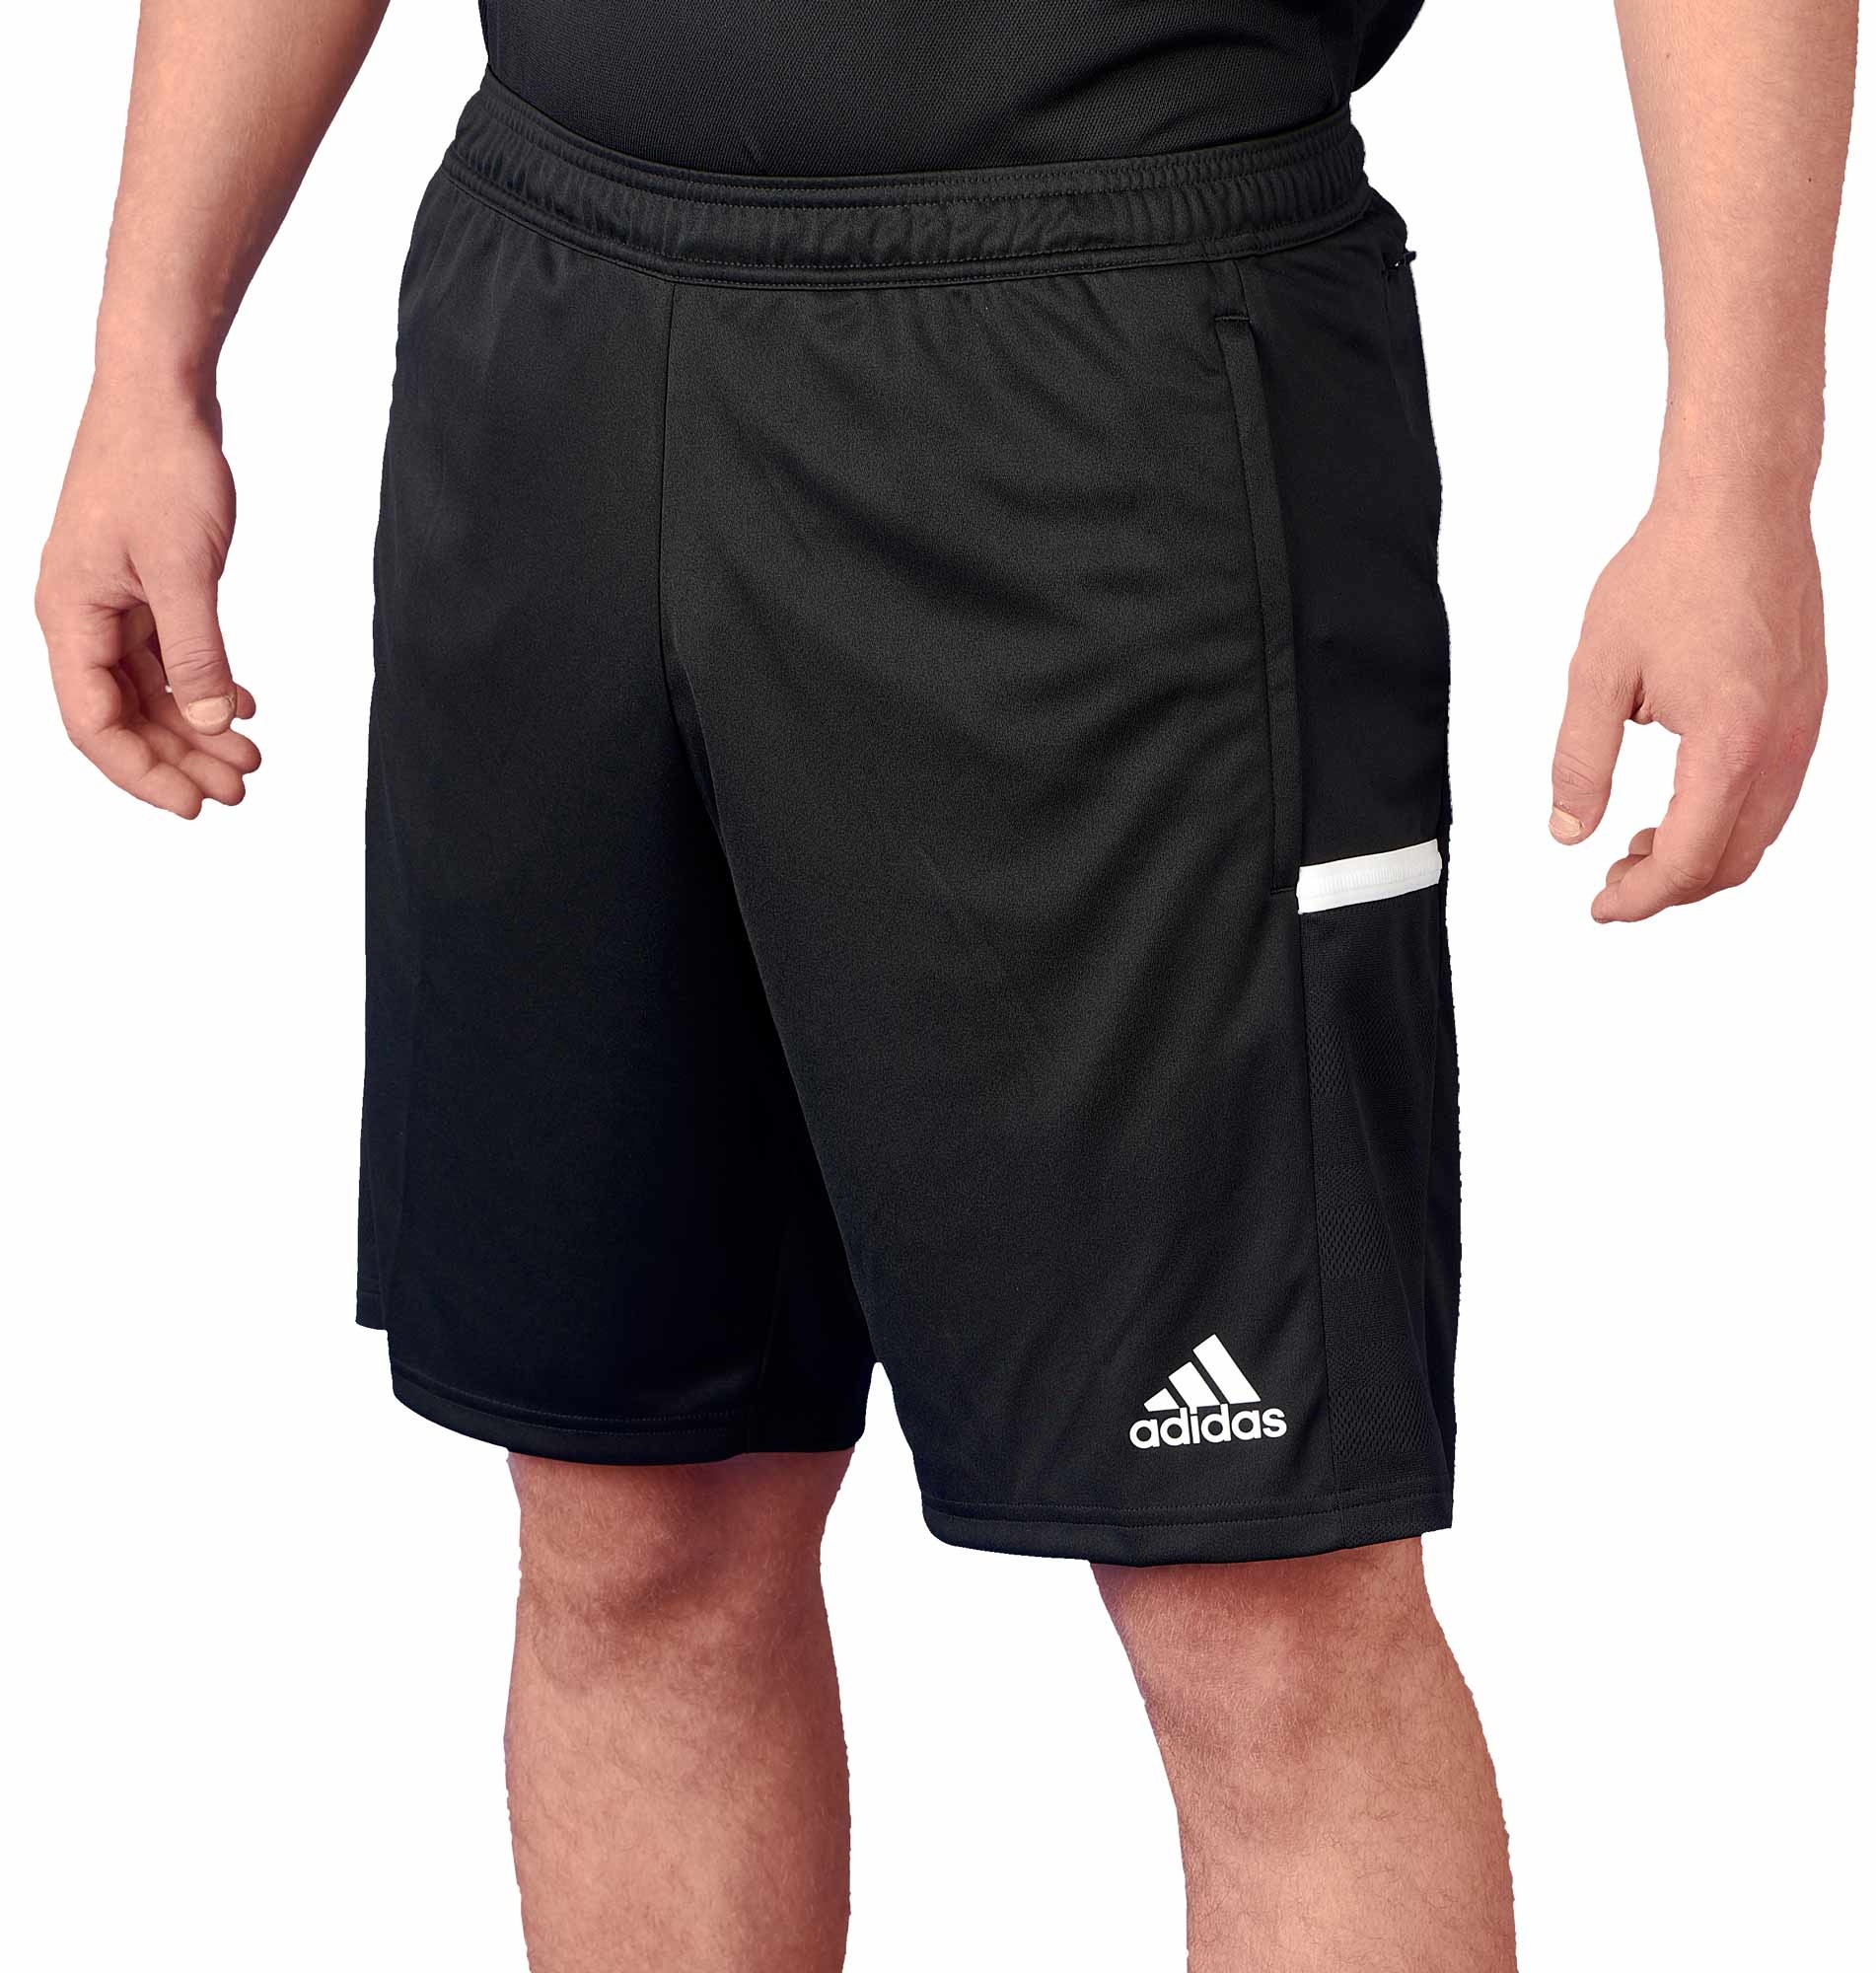 adidas t19 shorts